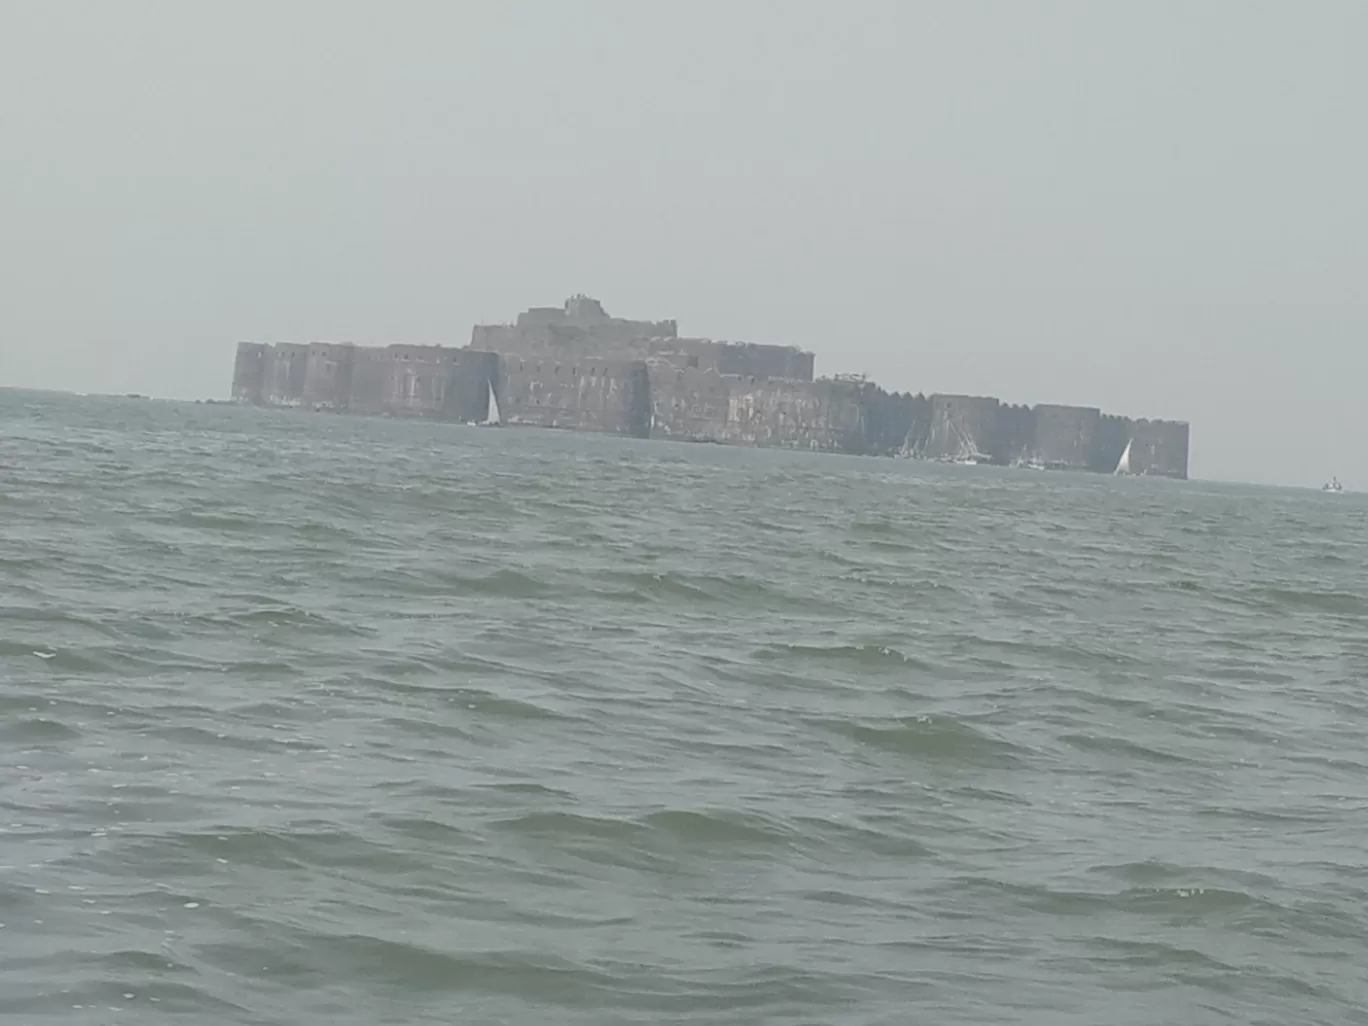 Photo of Murud-Janjira Fort By Varsha k